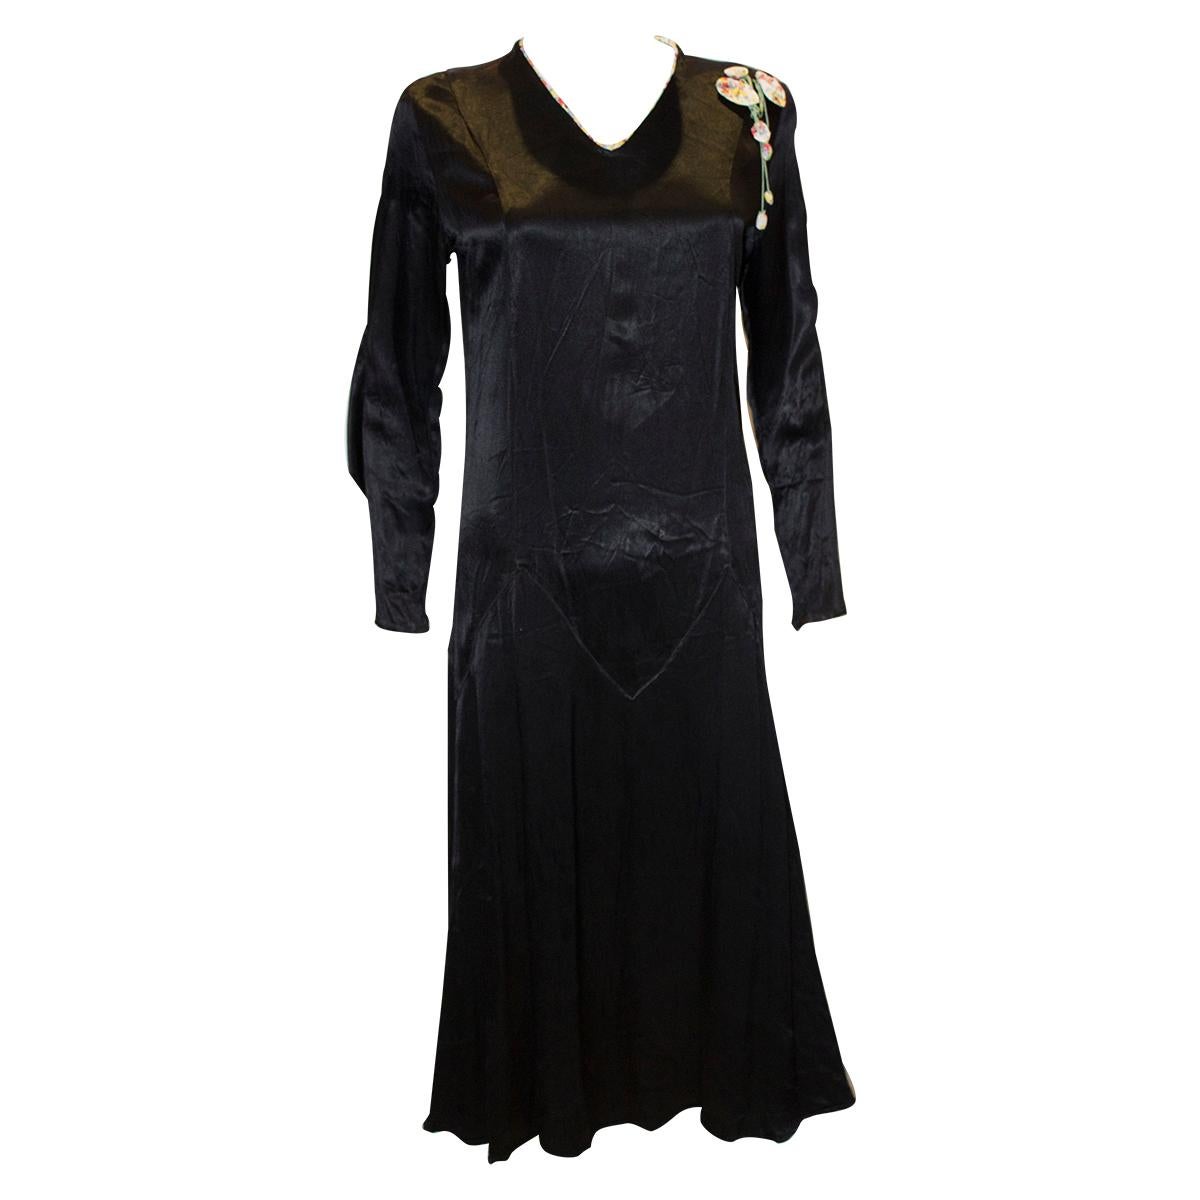 Vintage Black Satin 1920s dress with floral trim For Sale